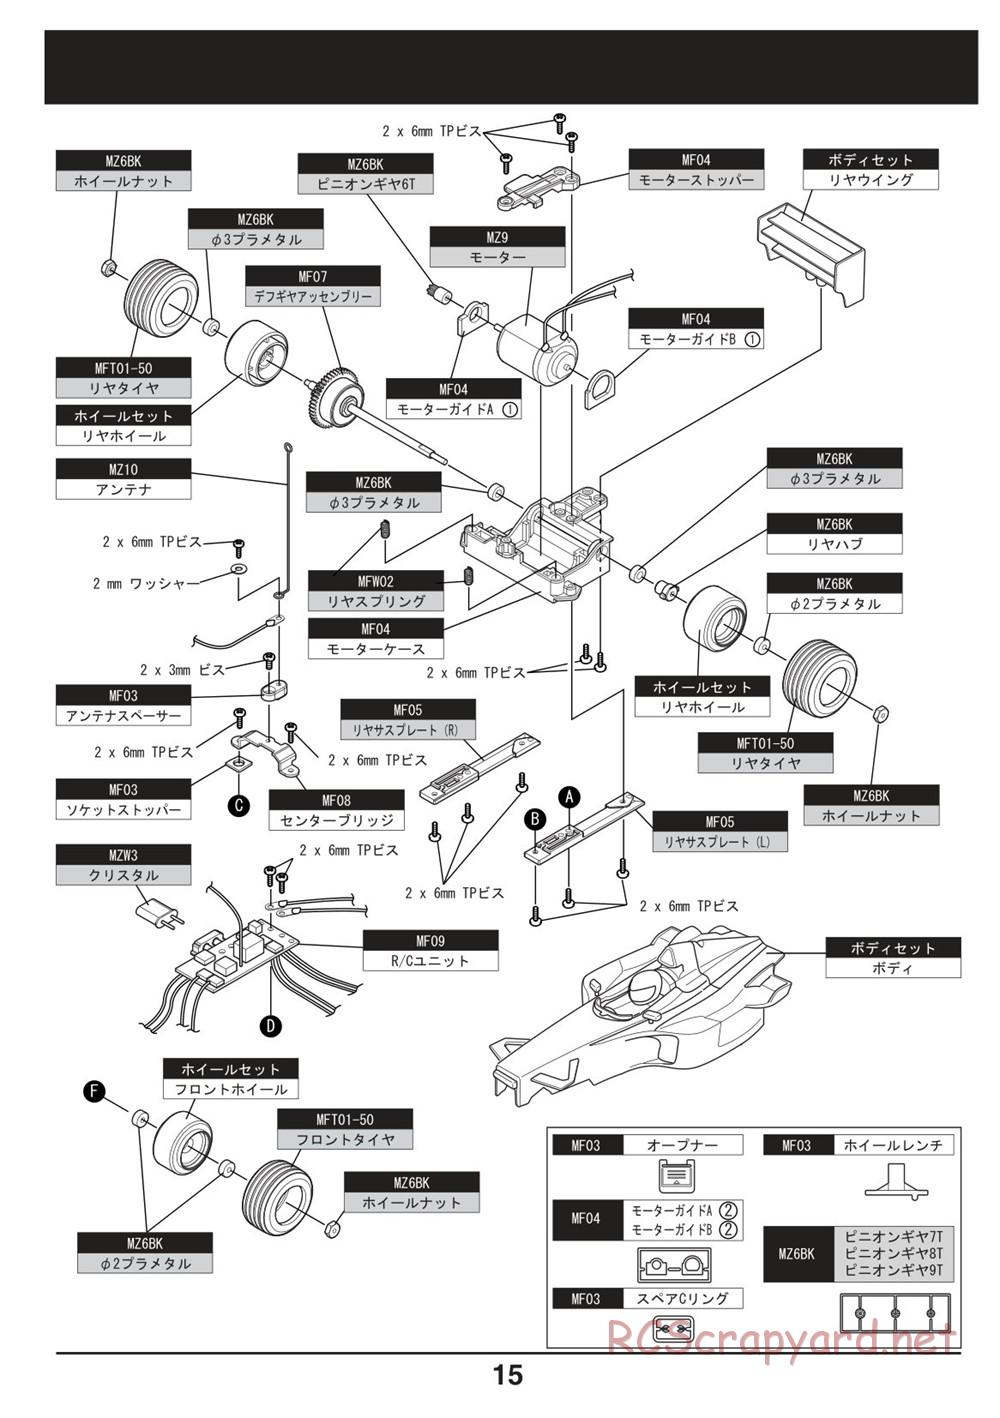 Kyosho - Mini-Z F1 - Manual - Page 15